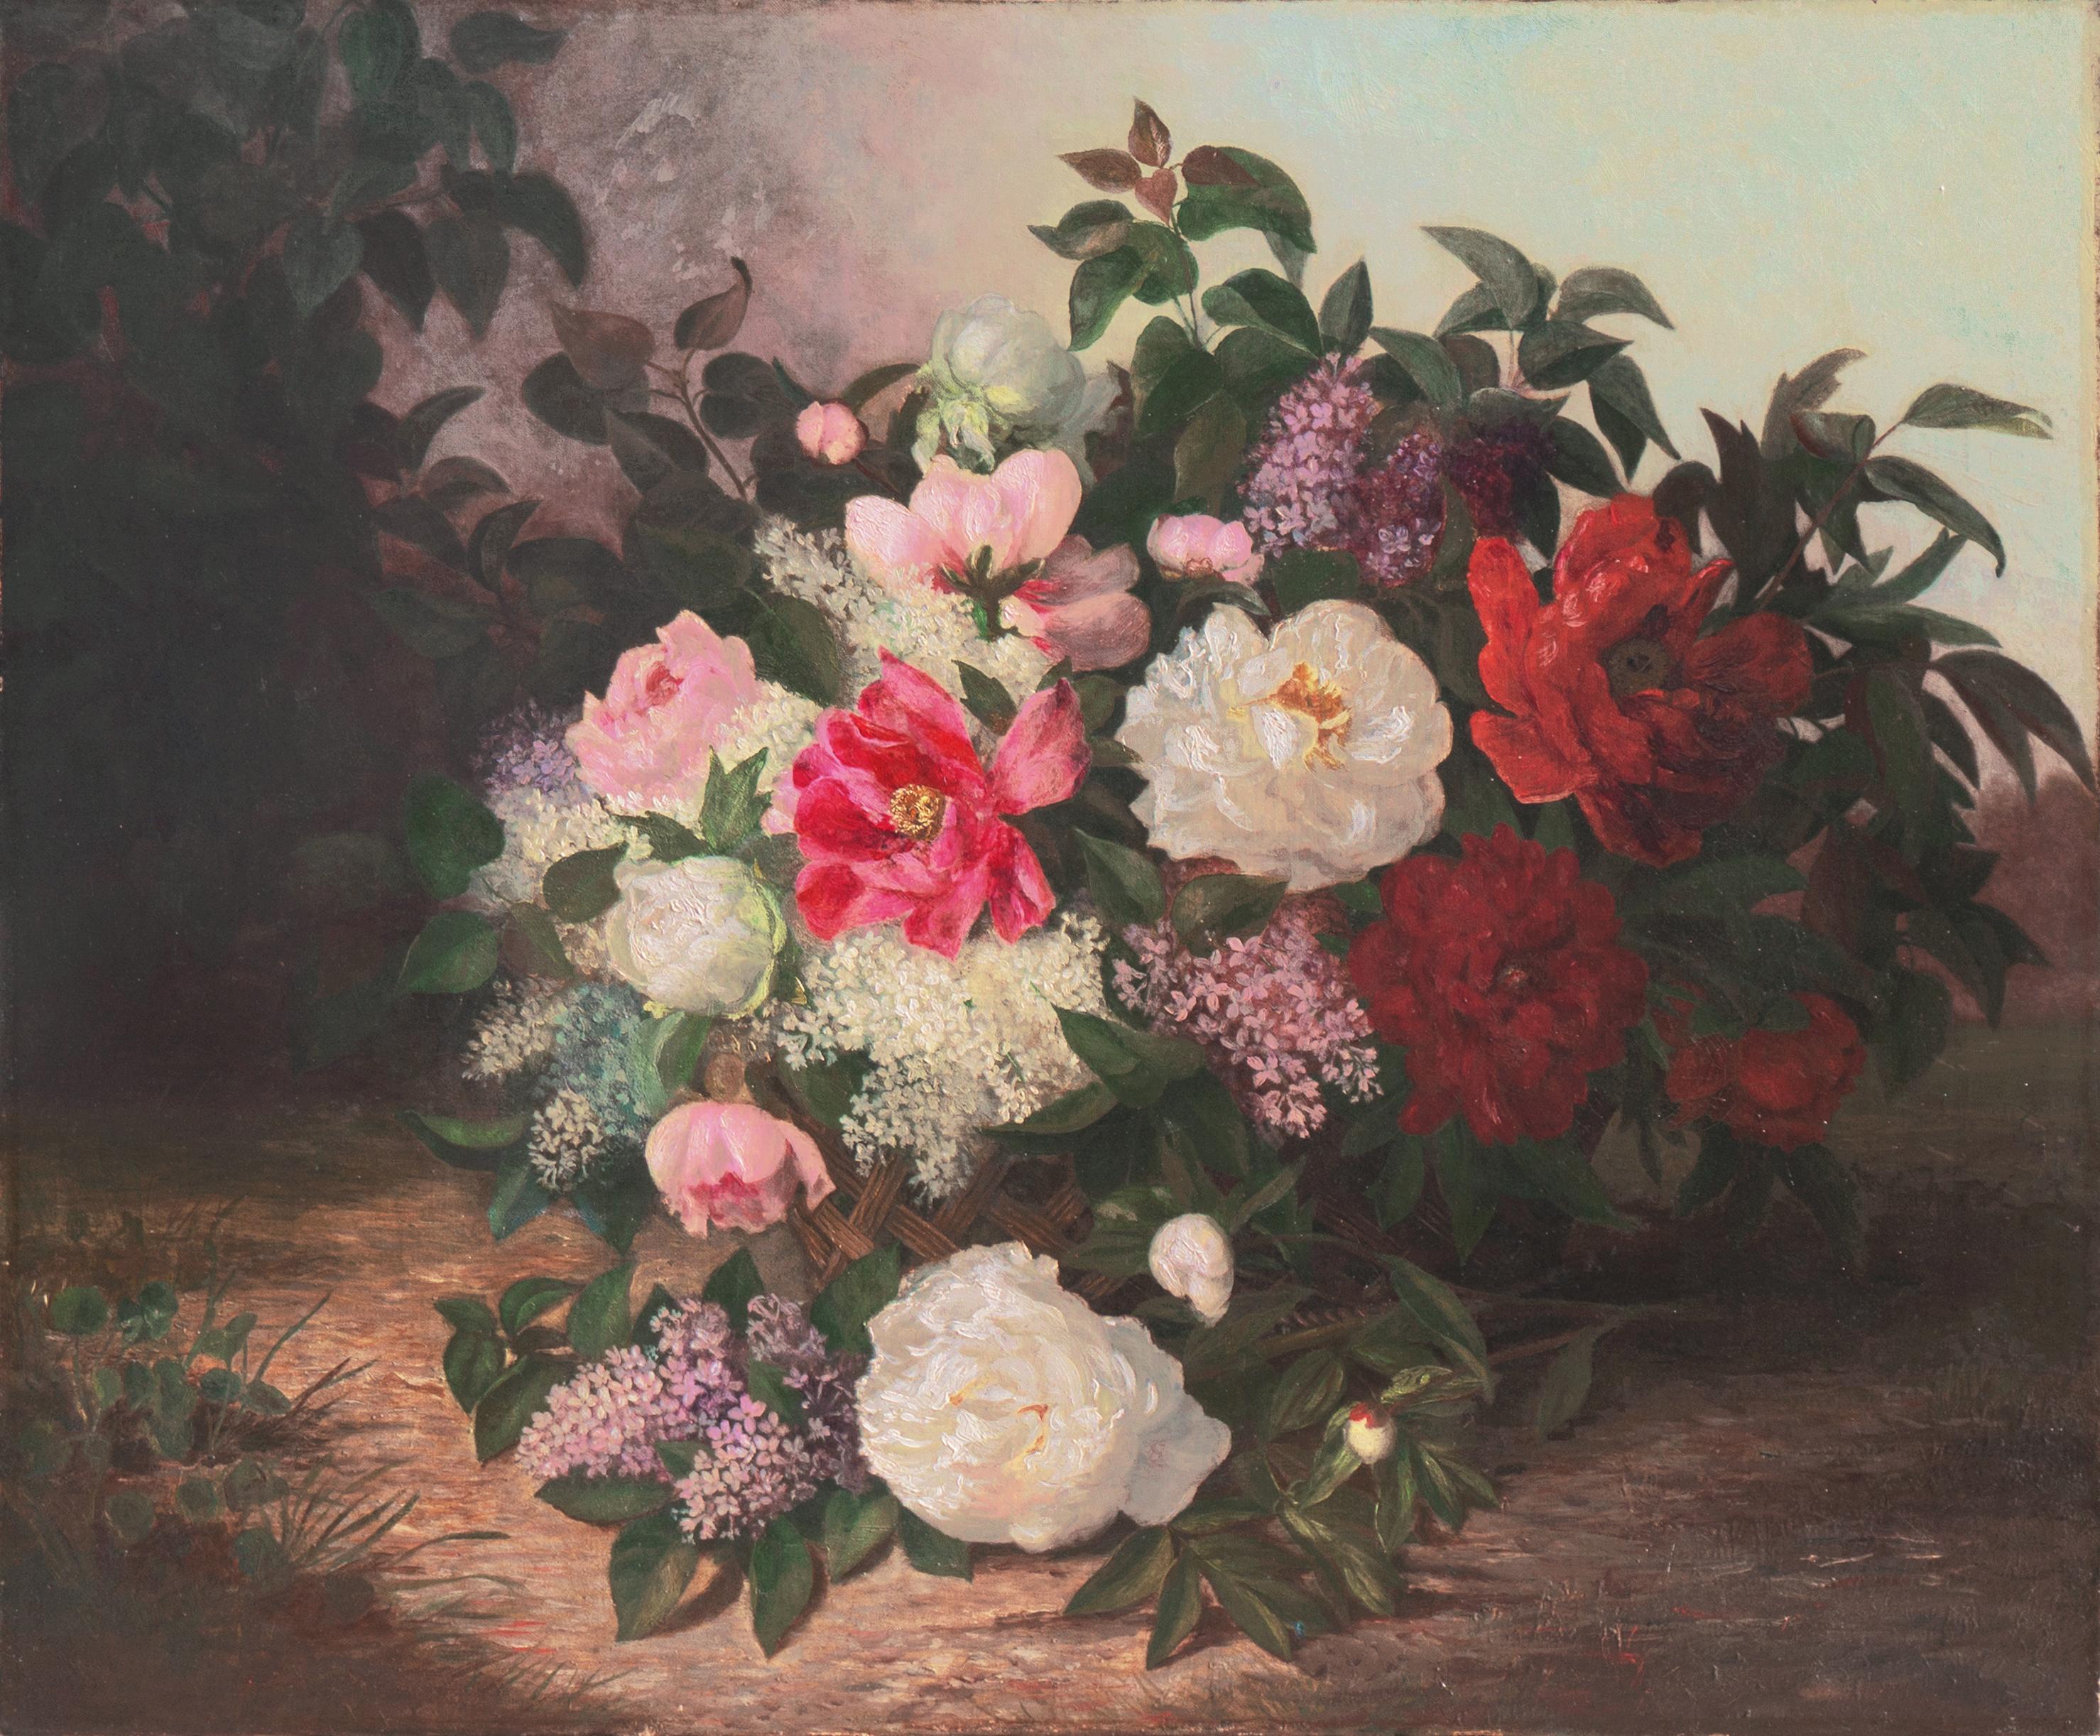 American School, 19th Century Still-Life Painting - 'Basket of Flowers', Large, 19th century, American School, Oil Still Life, Roses